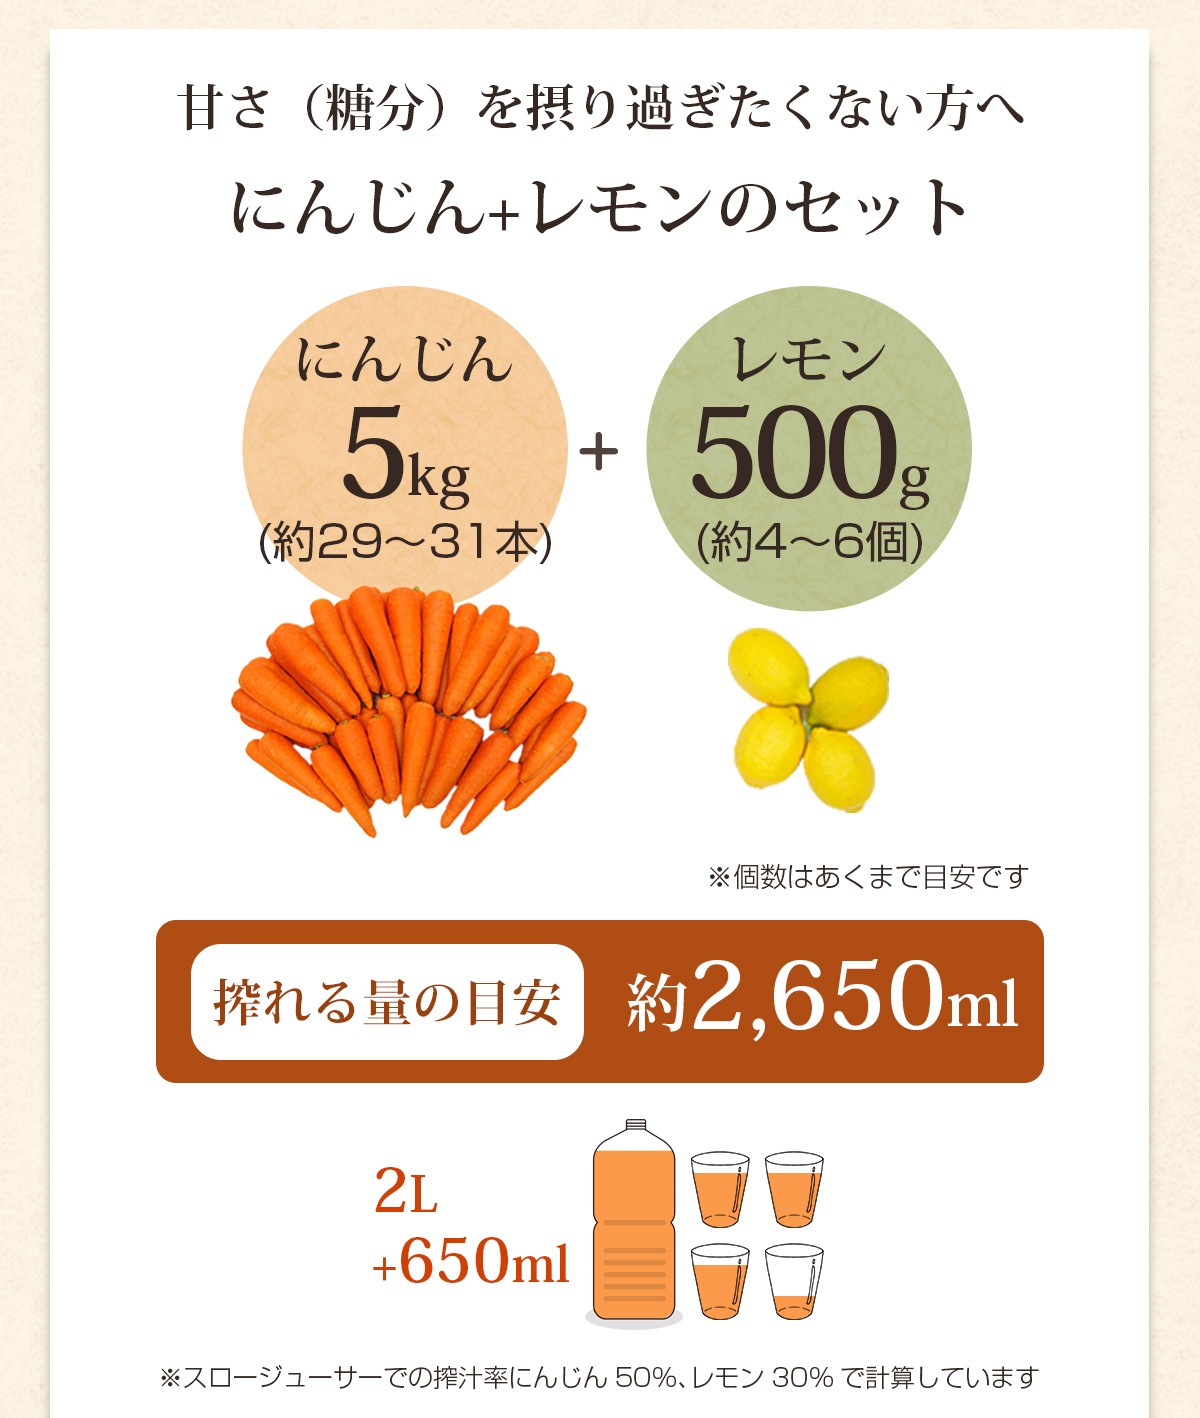 人参5kg＋レモン500gで搾れる量の目安は約2,650ml